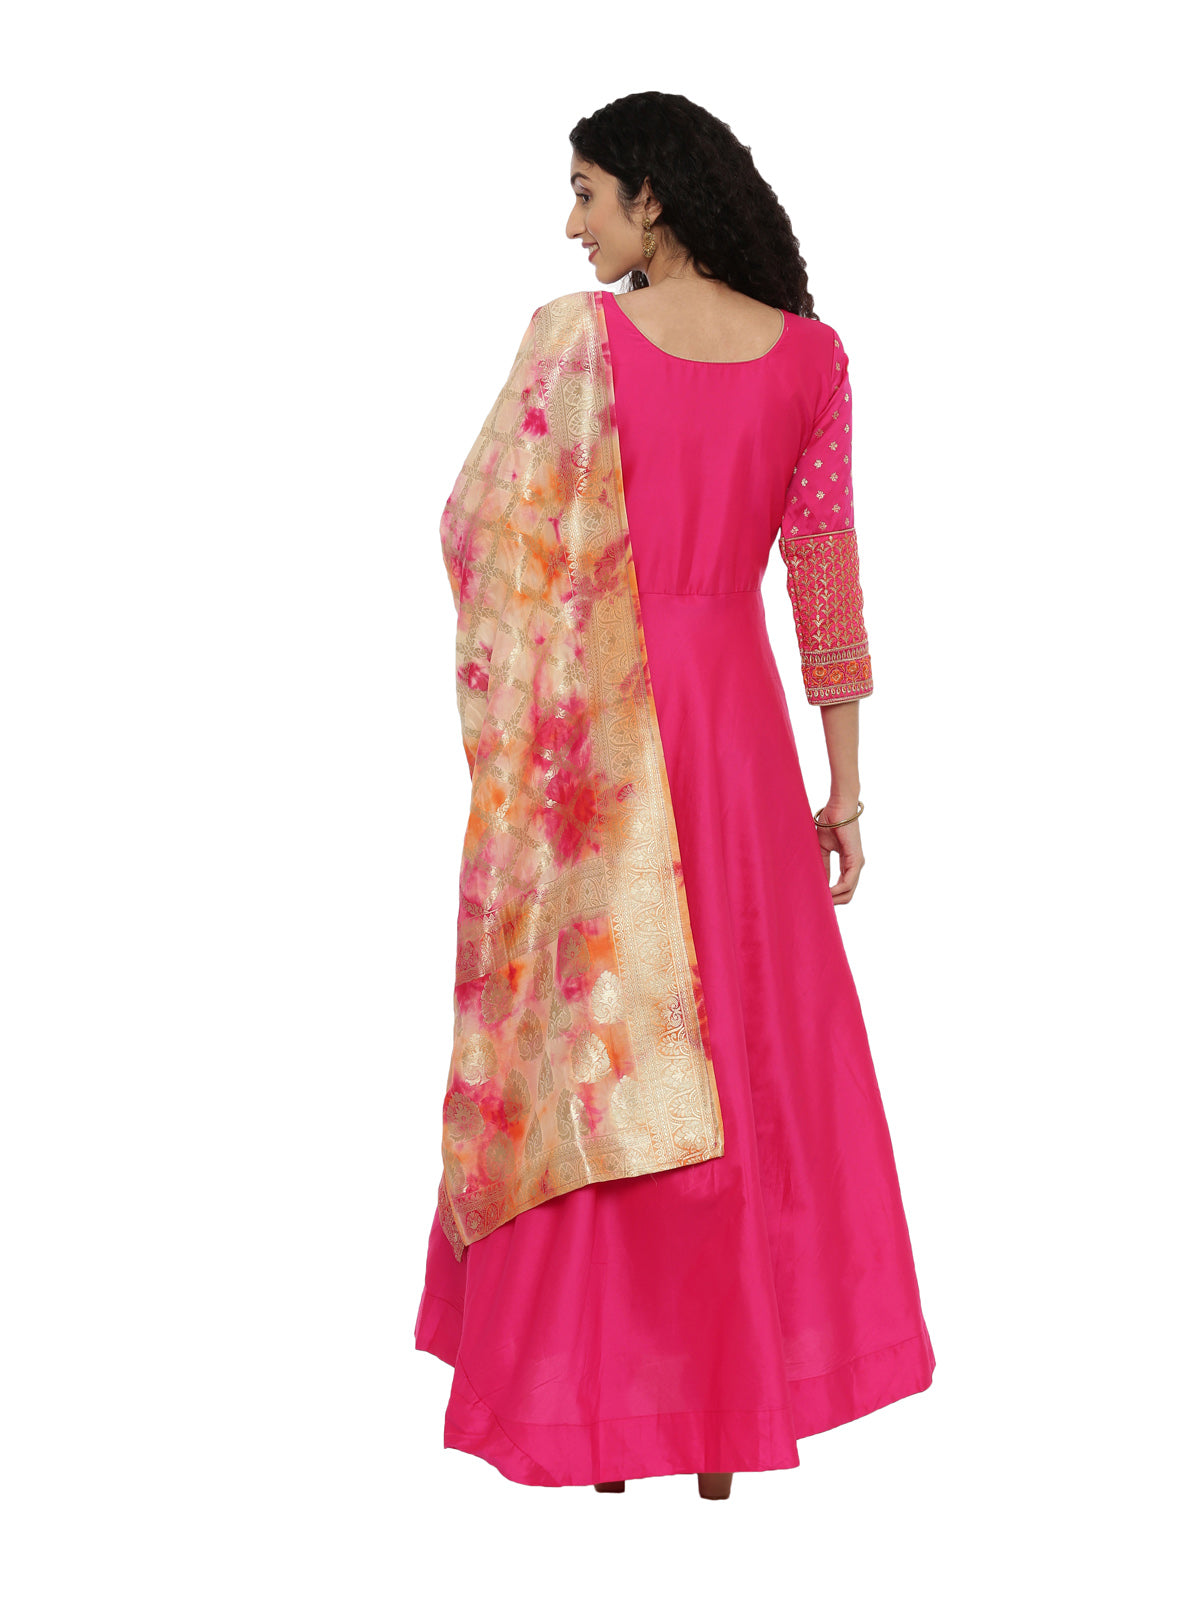 Neeru's Rani Pink Color Silk Fabric Full Sleeves Suit-Anarkali